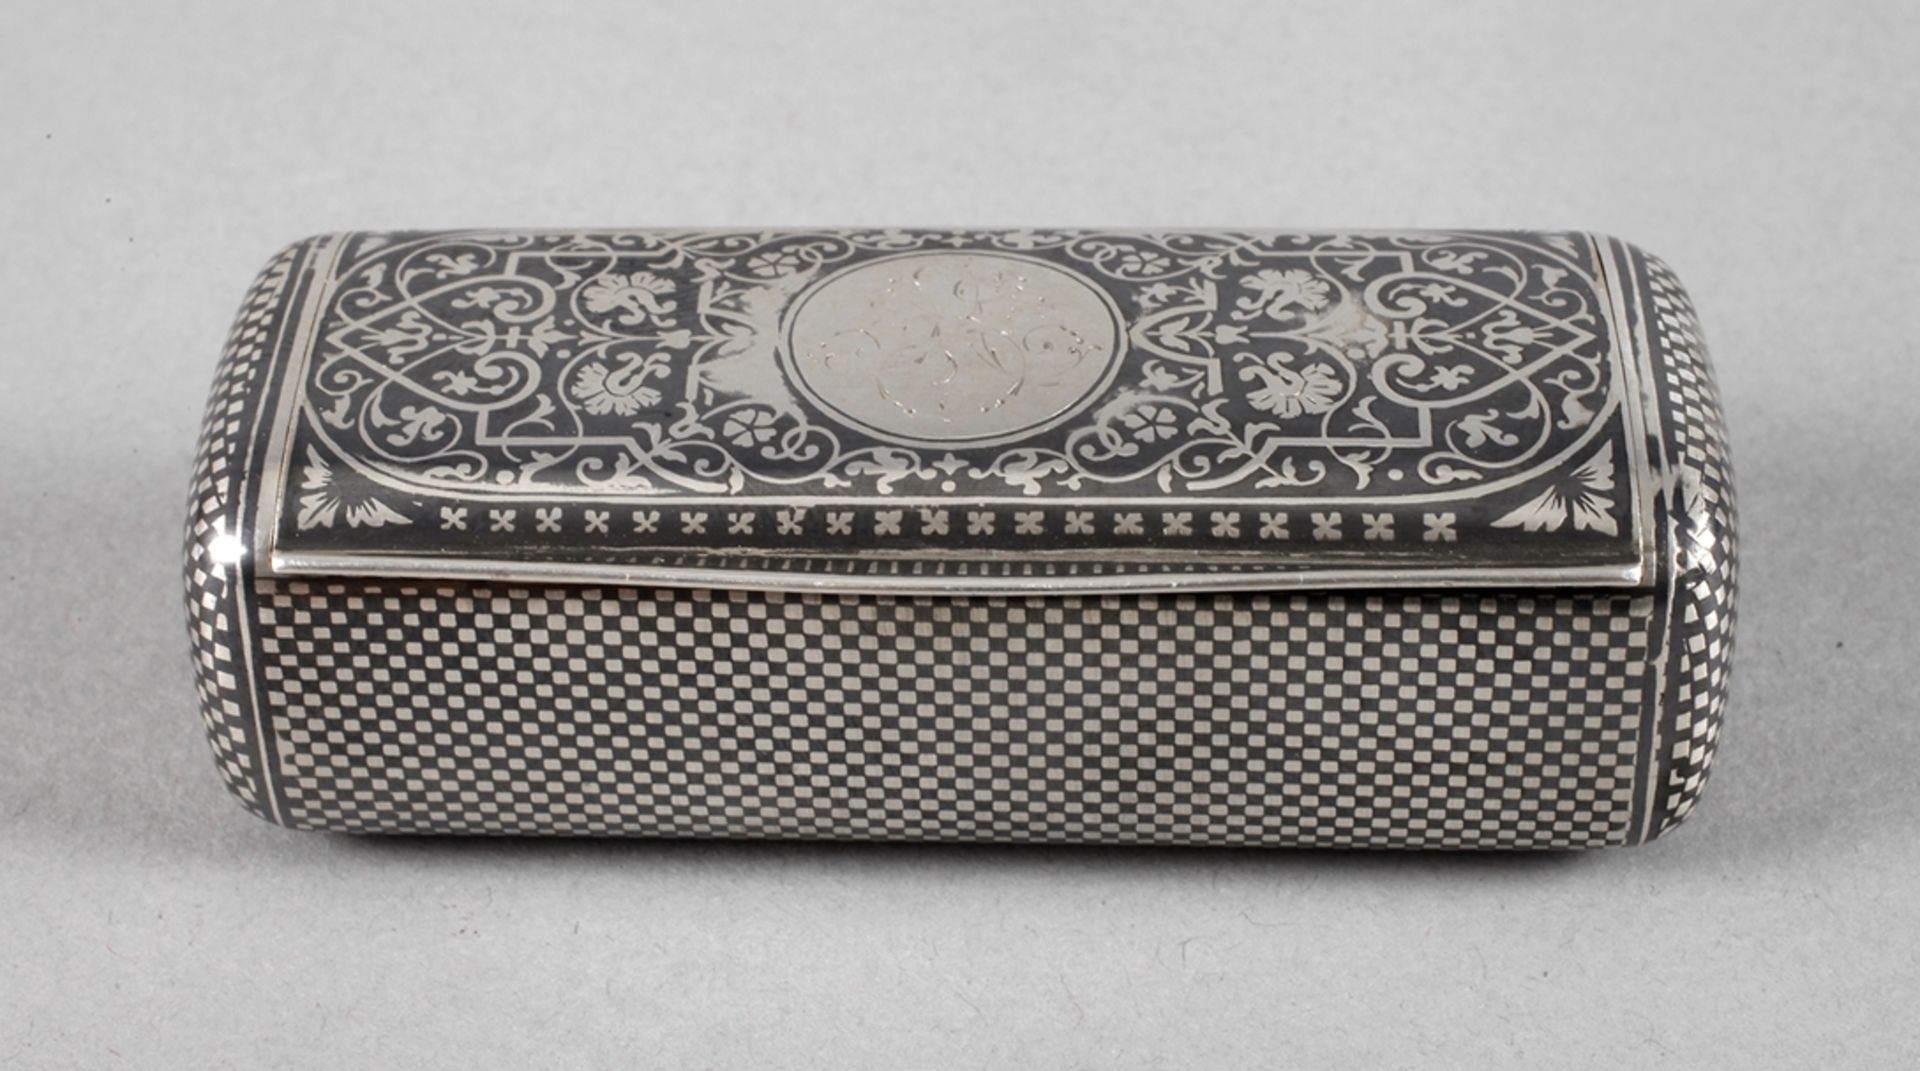 Silber Schnupftabakdose Wienum 1890, gepunzt Gustav Adolf Scheidt sowie Dianakopf, Silber innen